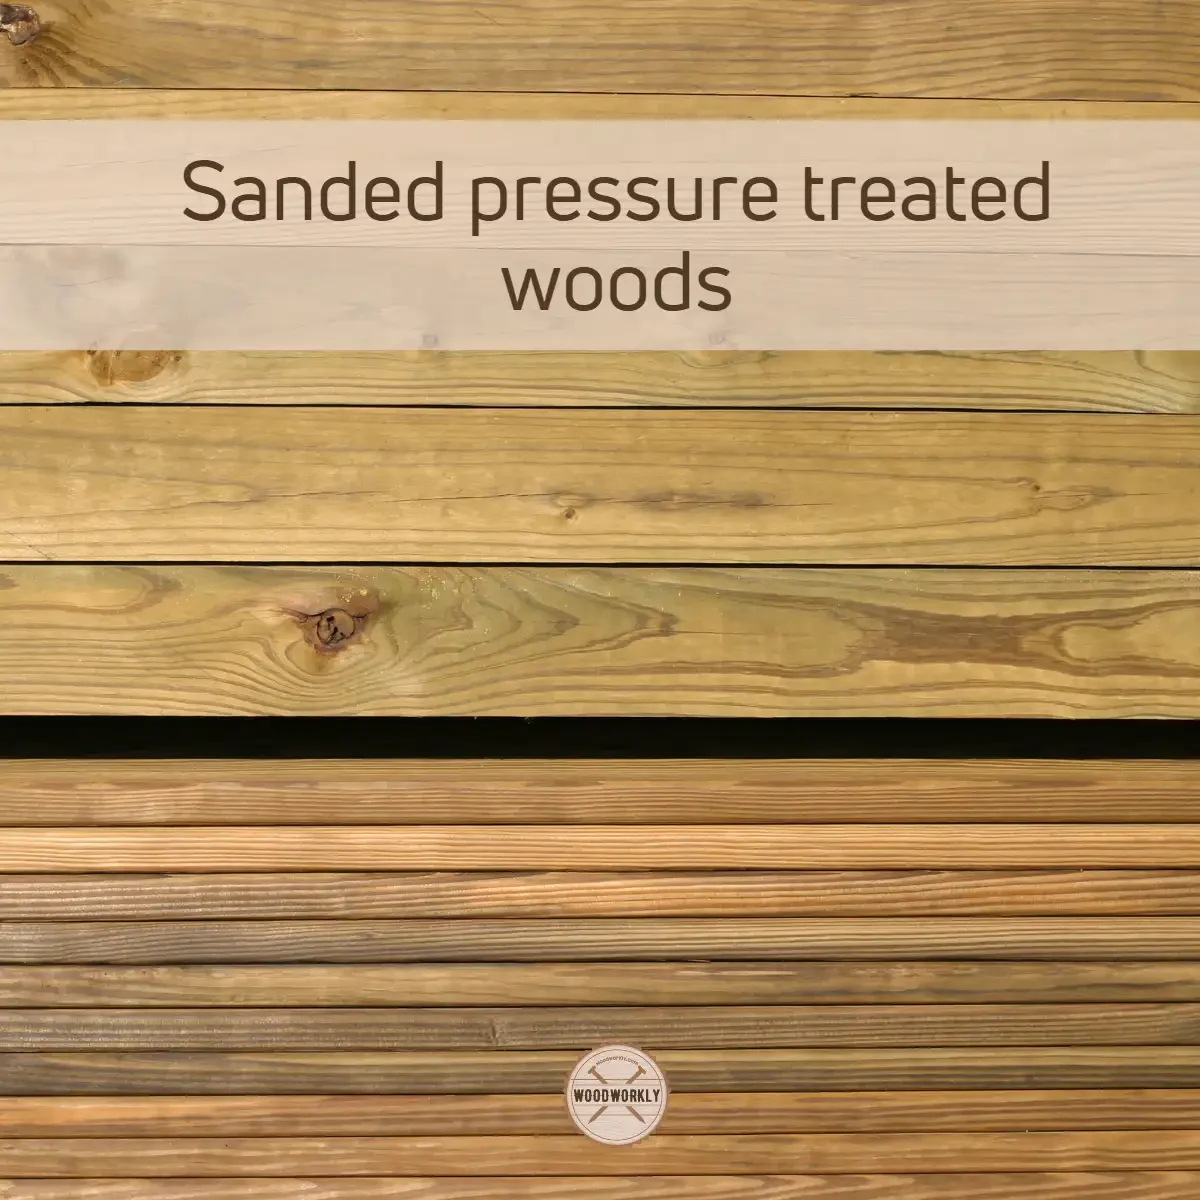 Sanded pressure treated woods